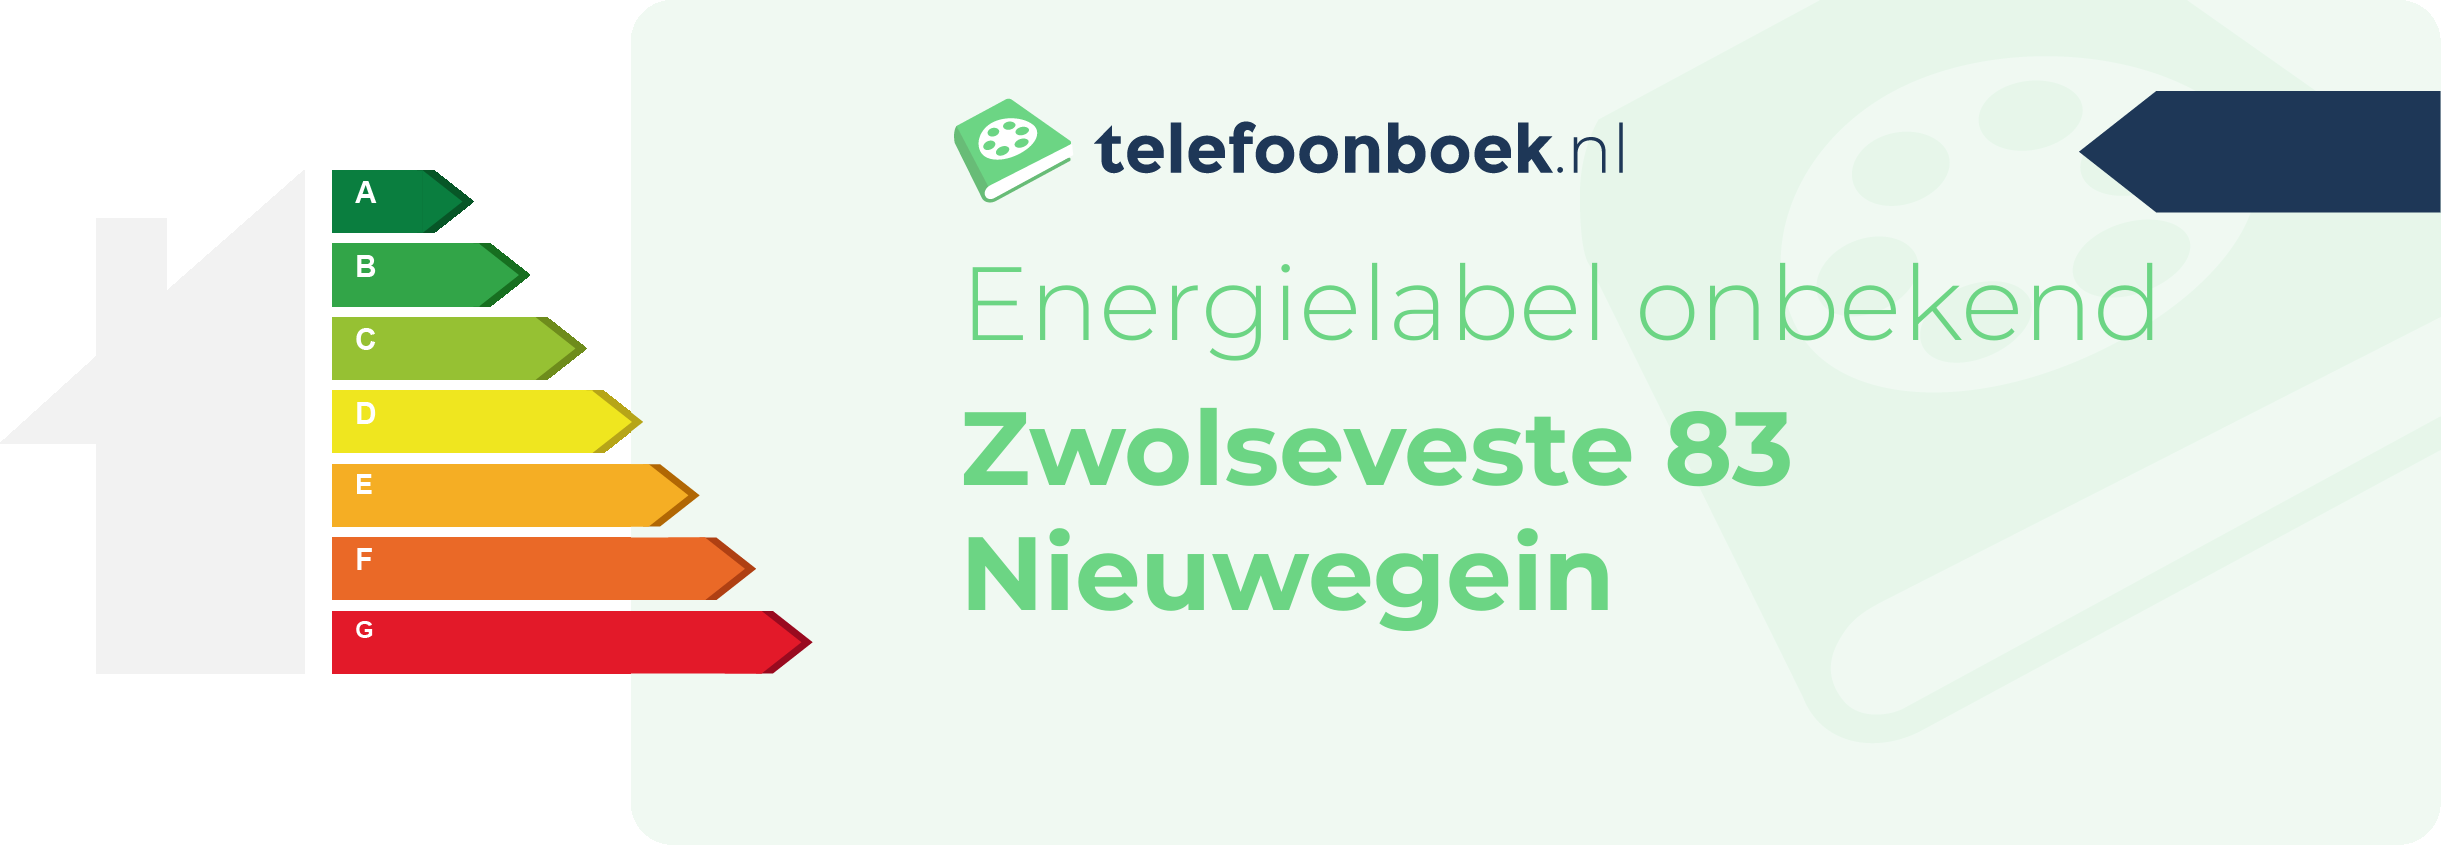 Energielabel Zwolseveste 83 Nieuwegein